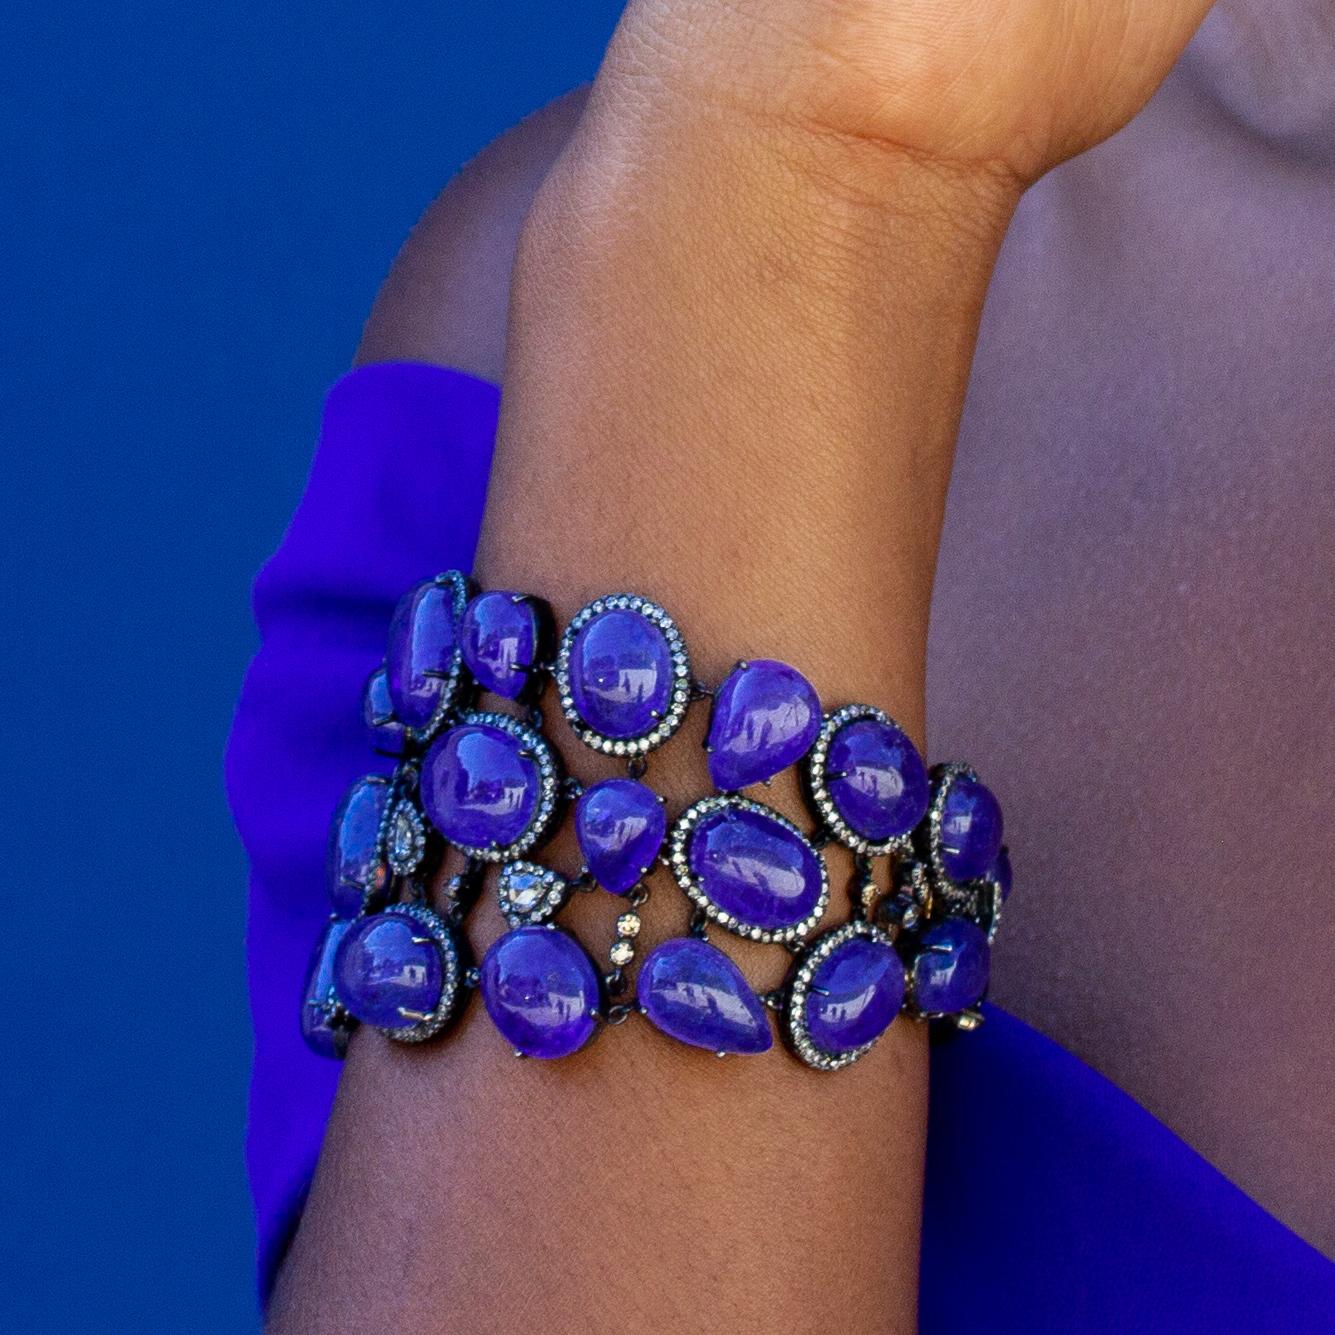 Ce bracelet incroyablement flexible présente une série de grands cabochons de tanzanite bleue, 275 carats de tanzanite accentués par des diamants uniques. Contactez-nous pour les options de redimensionnement de cette pièce.